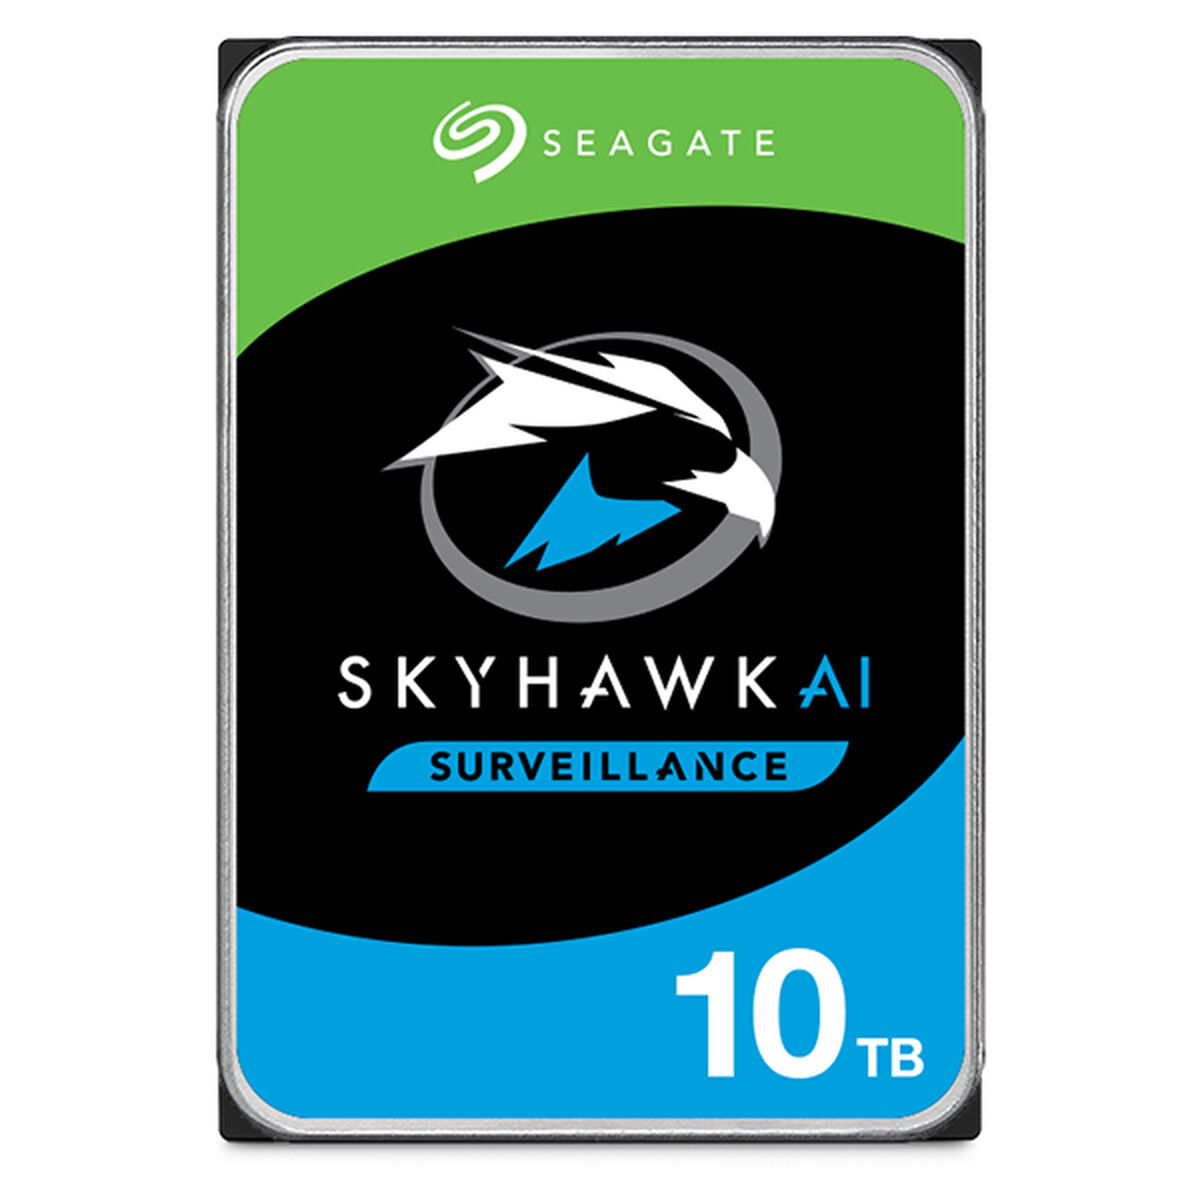 Hard Disk Seagate SkyHawk Ai 3,5" 10 TB